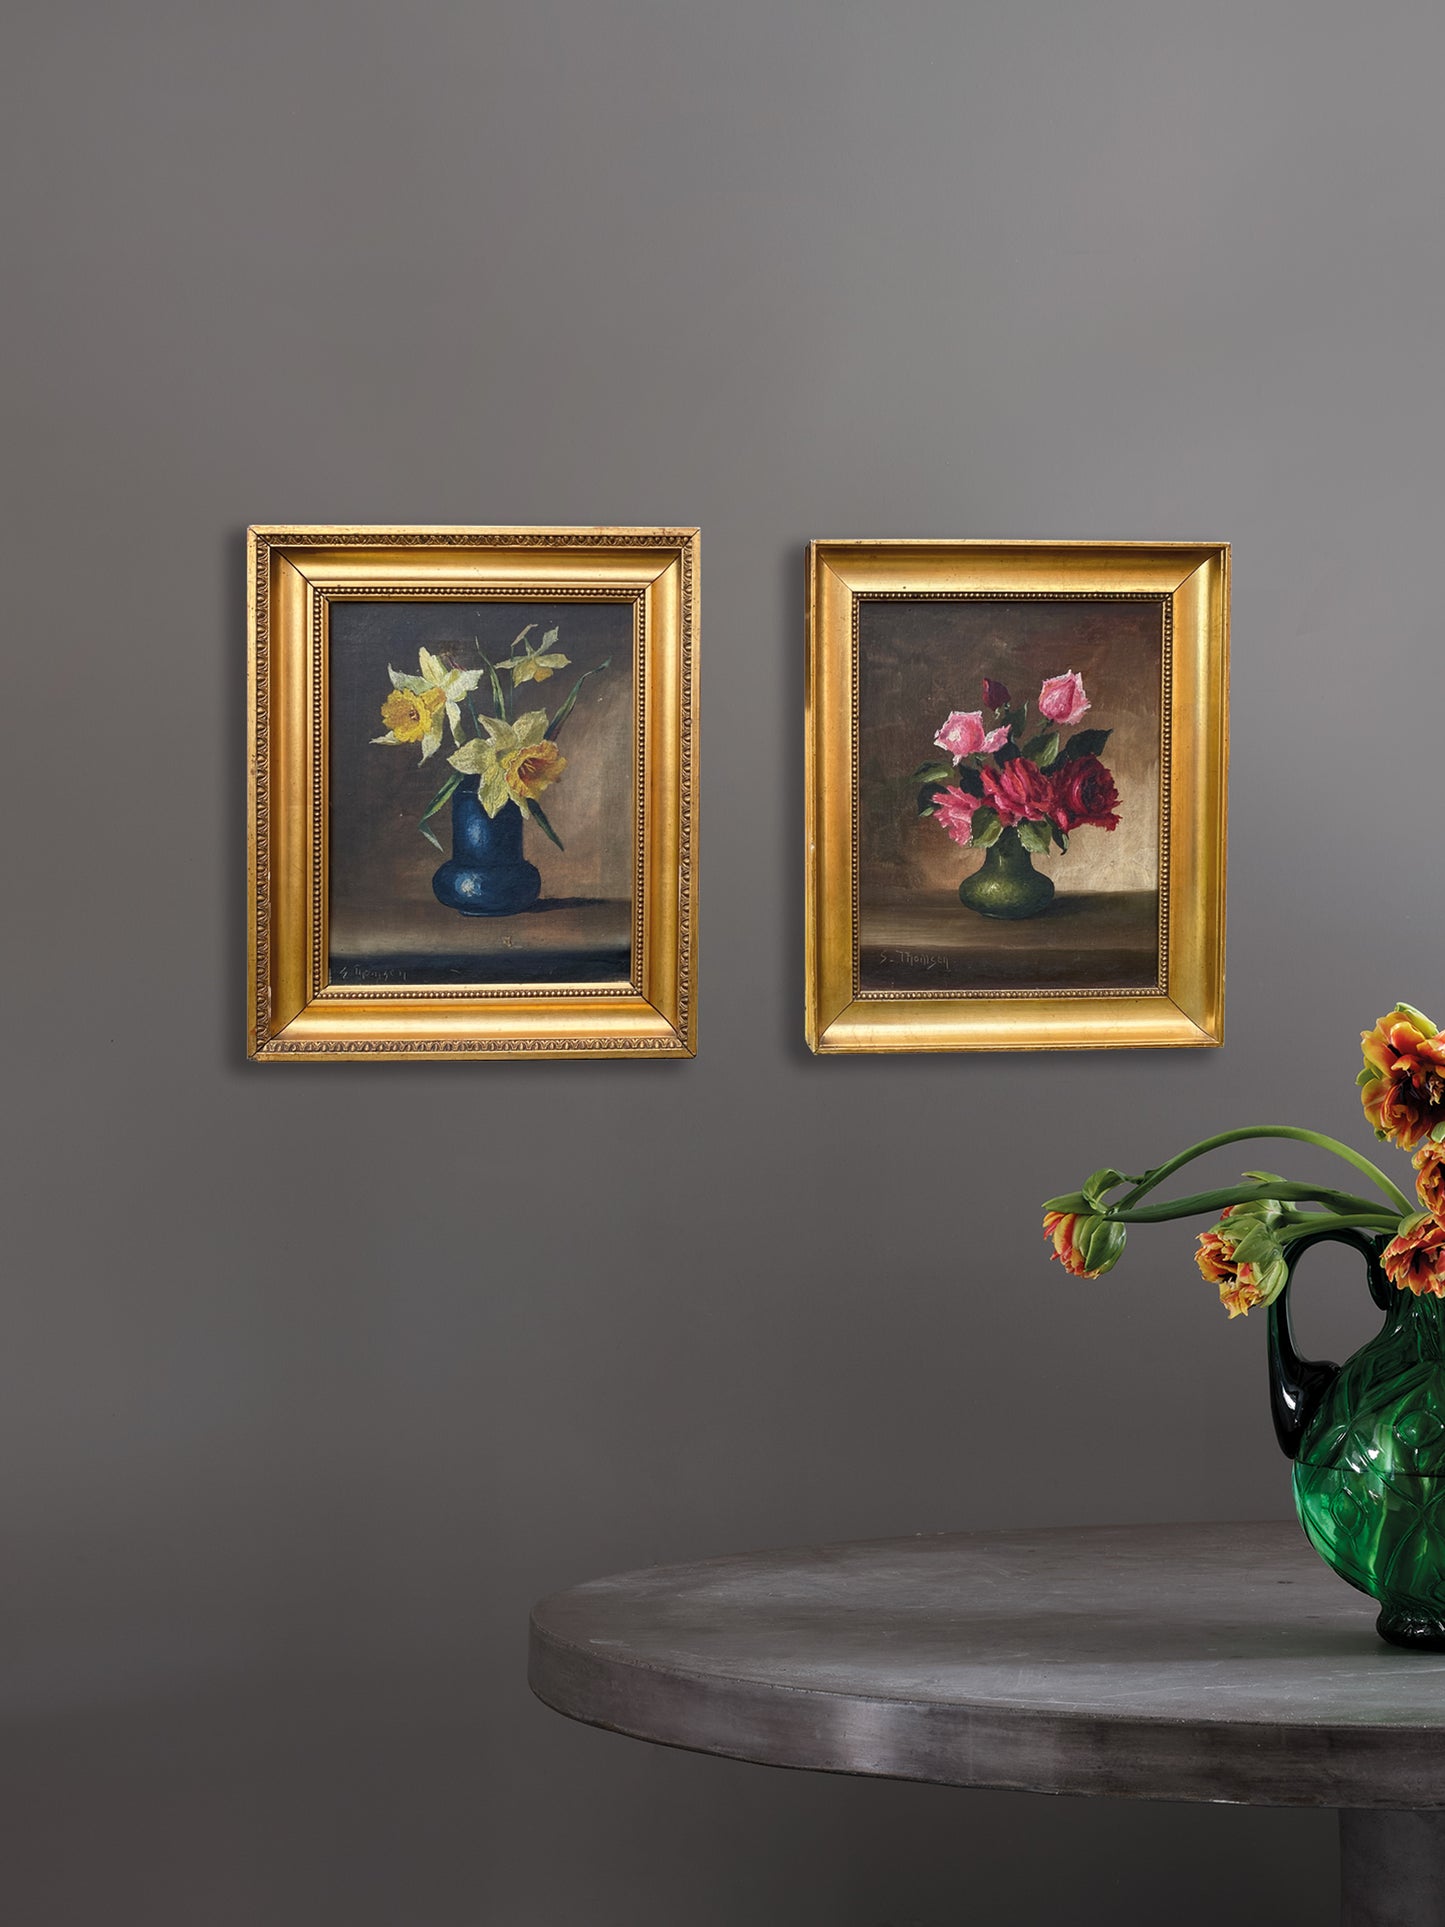 A near pair Framed Danish Art Oil in Canvas 'Flowers in Vases S. Thomsen c 1940s